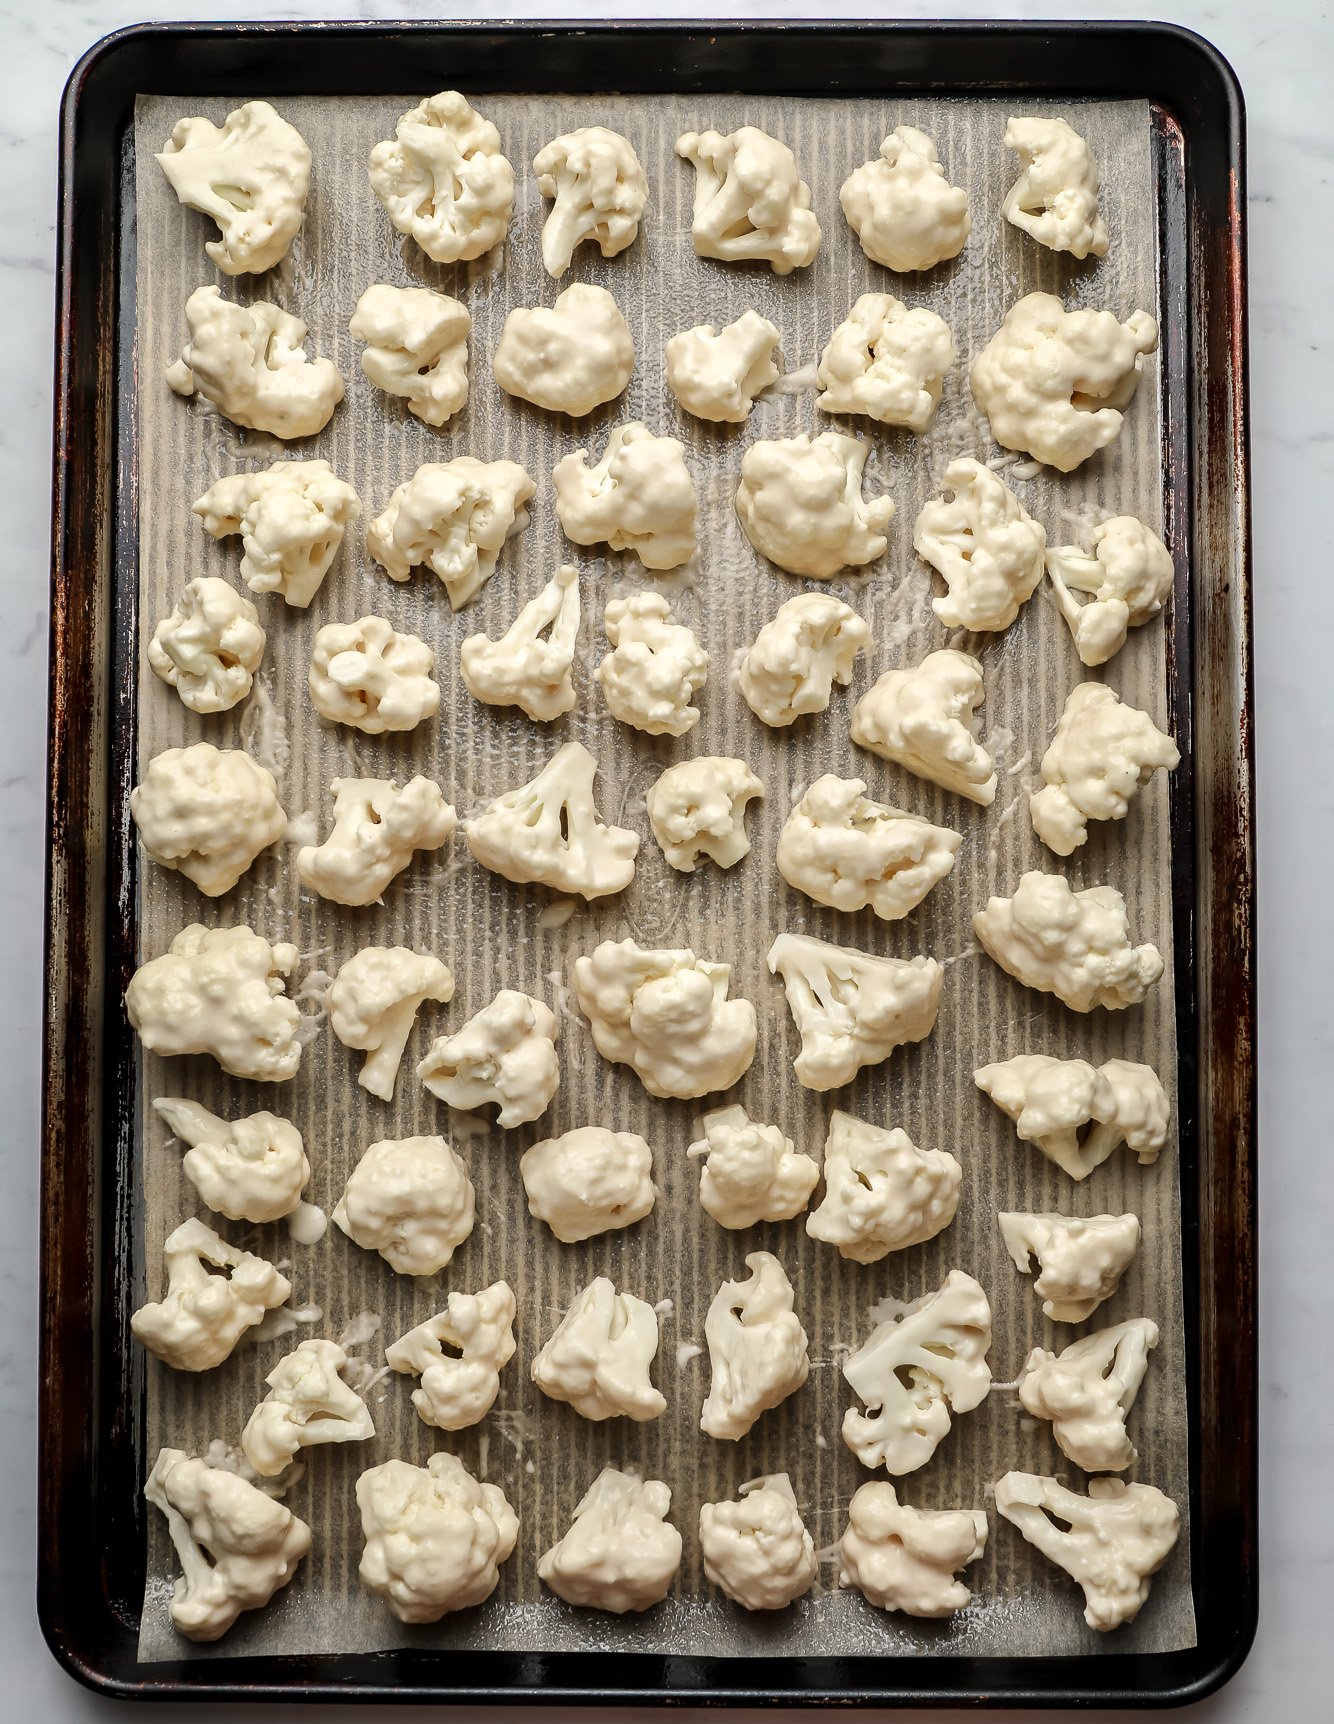 breaded cauliflower in rows on a baking sheet.